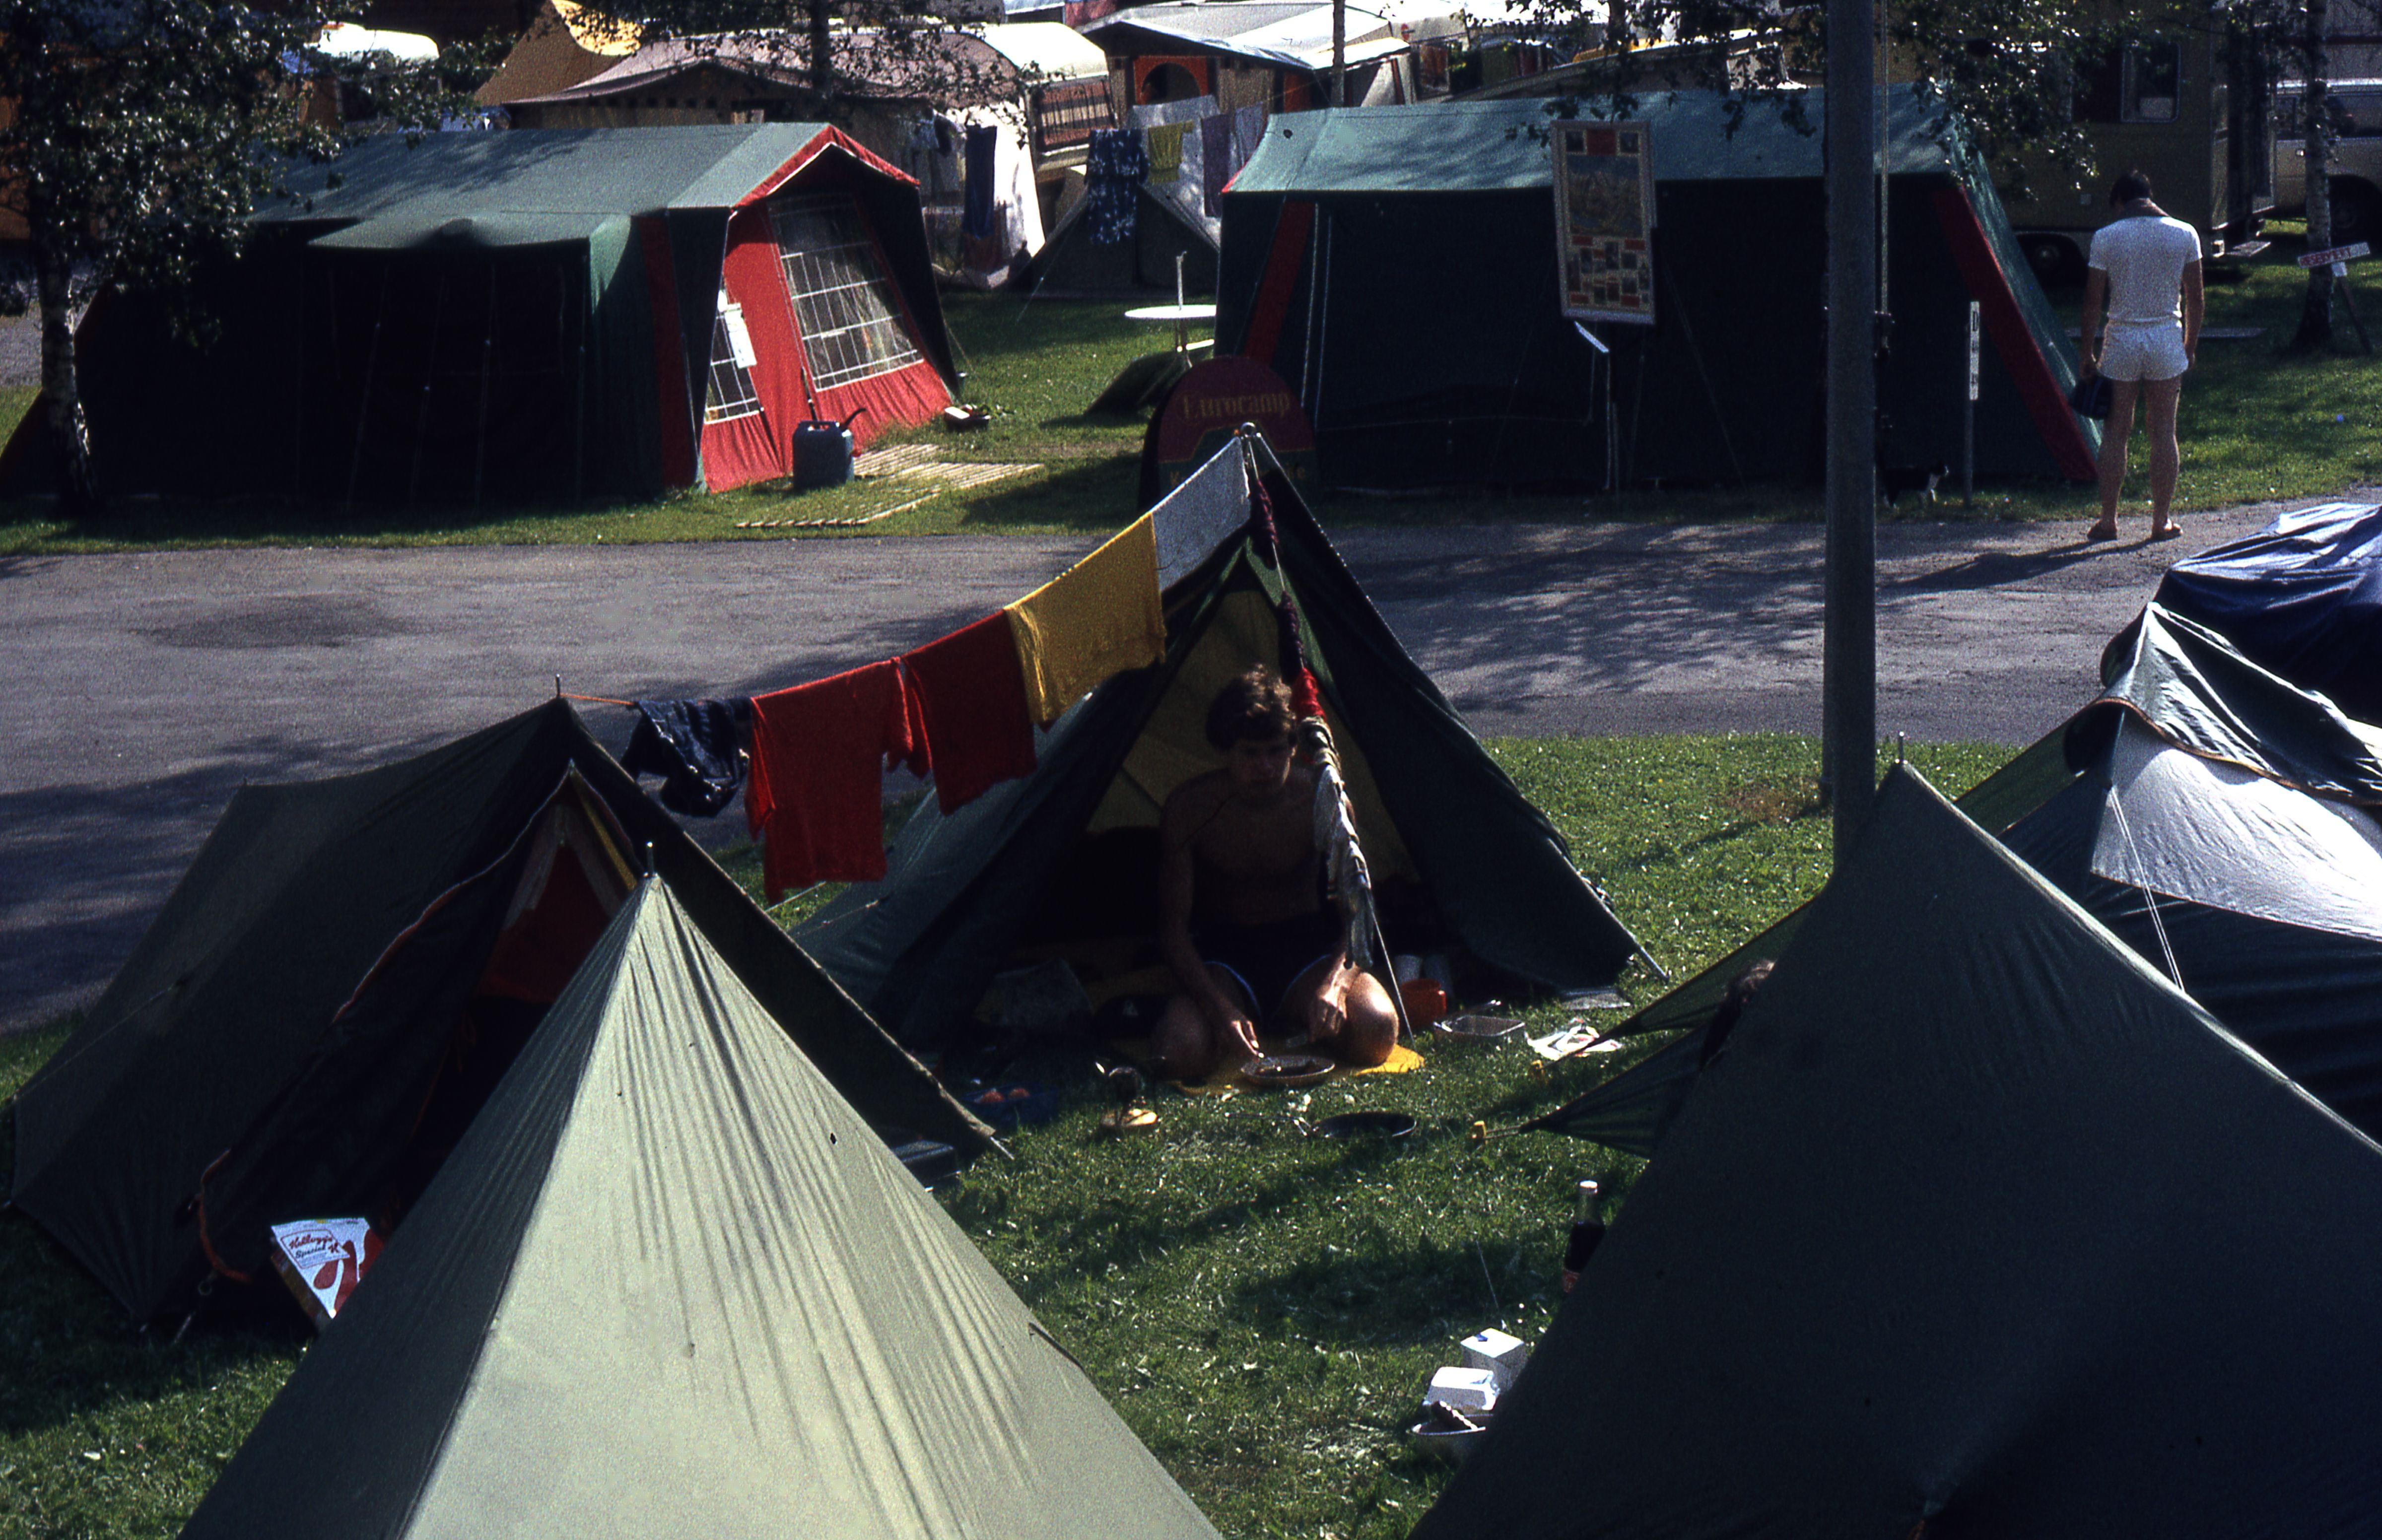 Camping in Interlaken